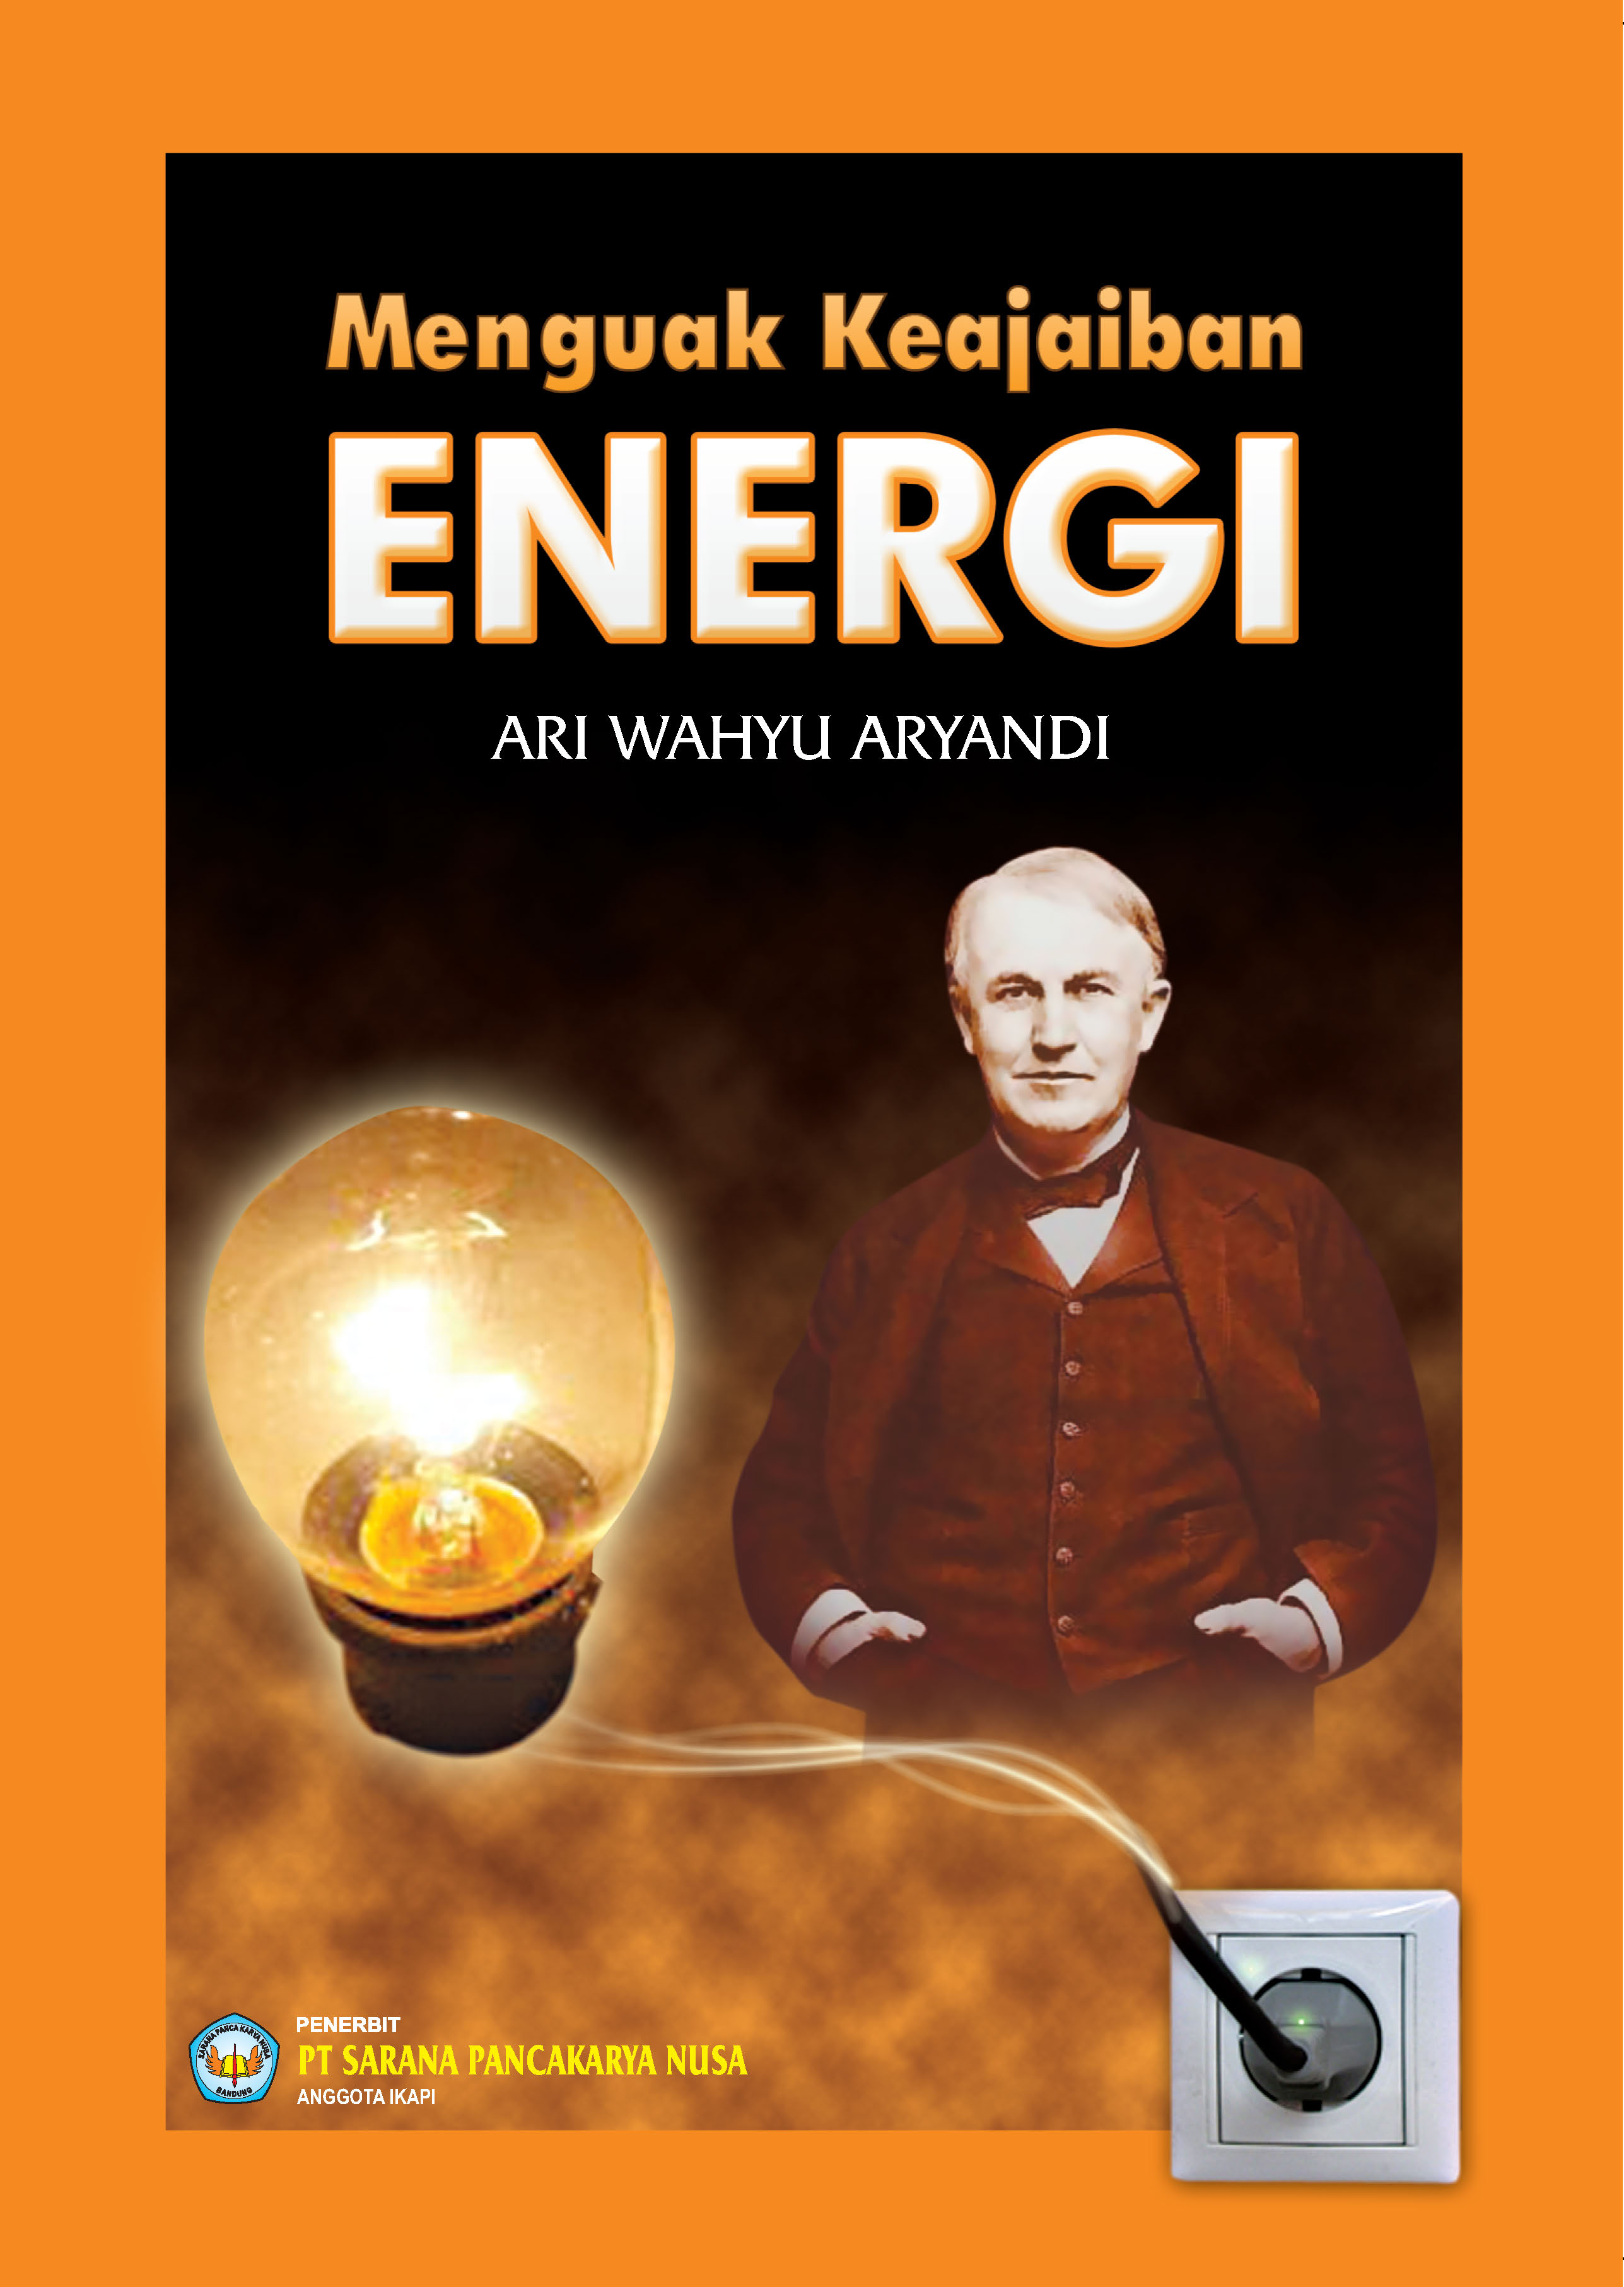 Menguak keajaiban energi [sumber elektronis]